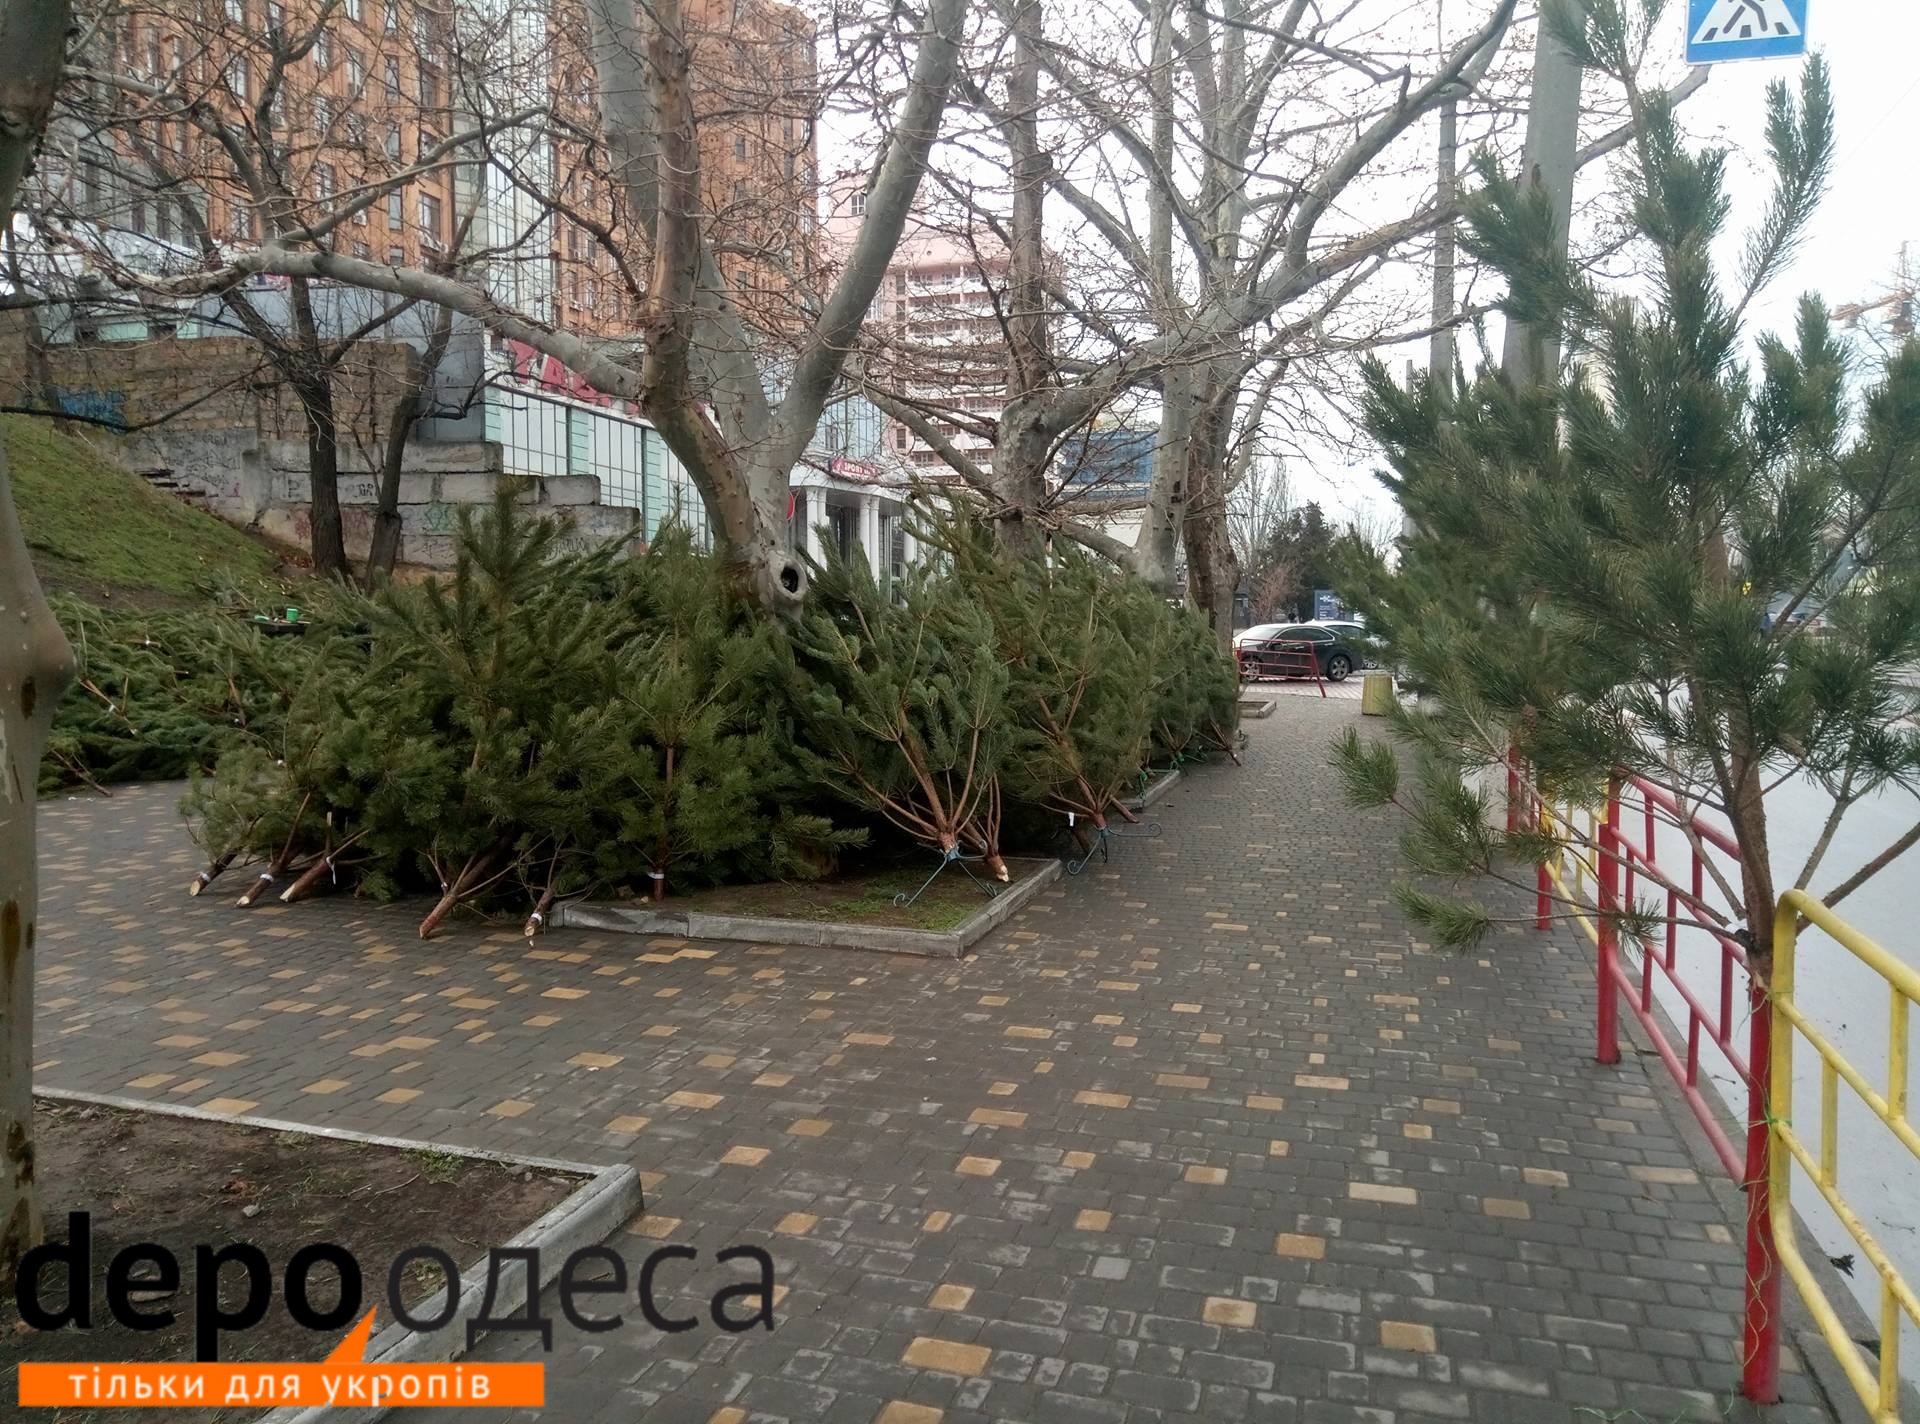 До Нового року кілька днів: вулиці Одеси всипані "правильними ялинками" (ФОТО) - фото 1